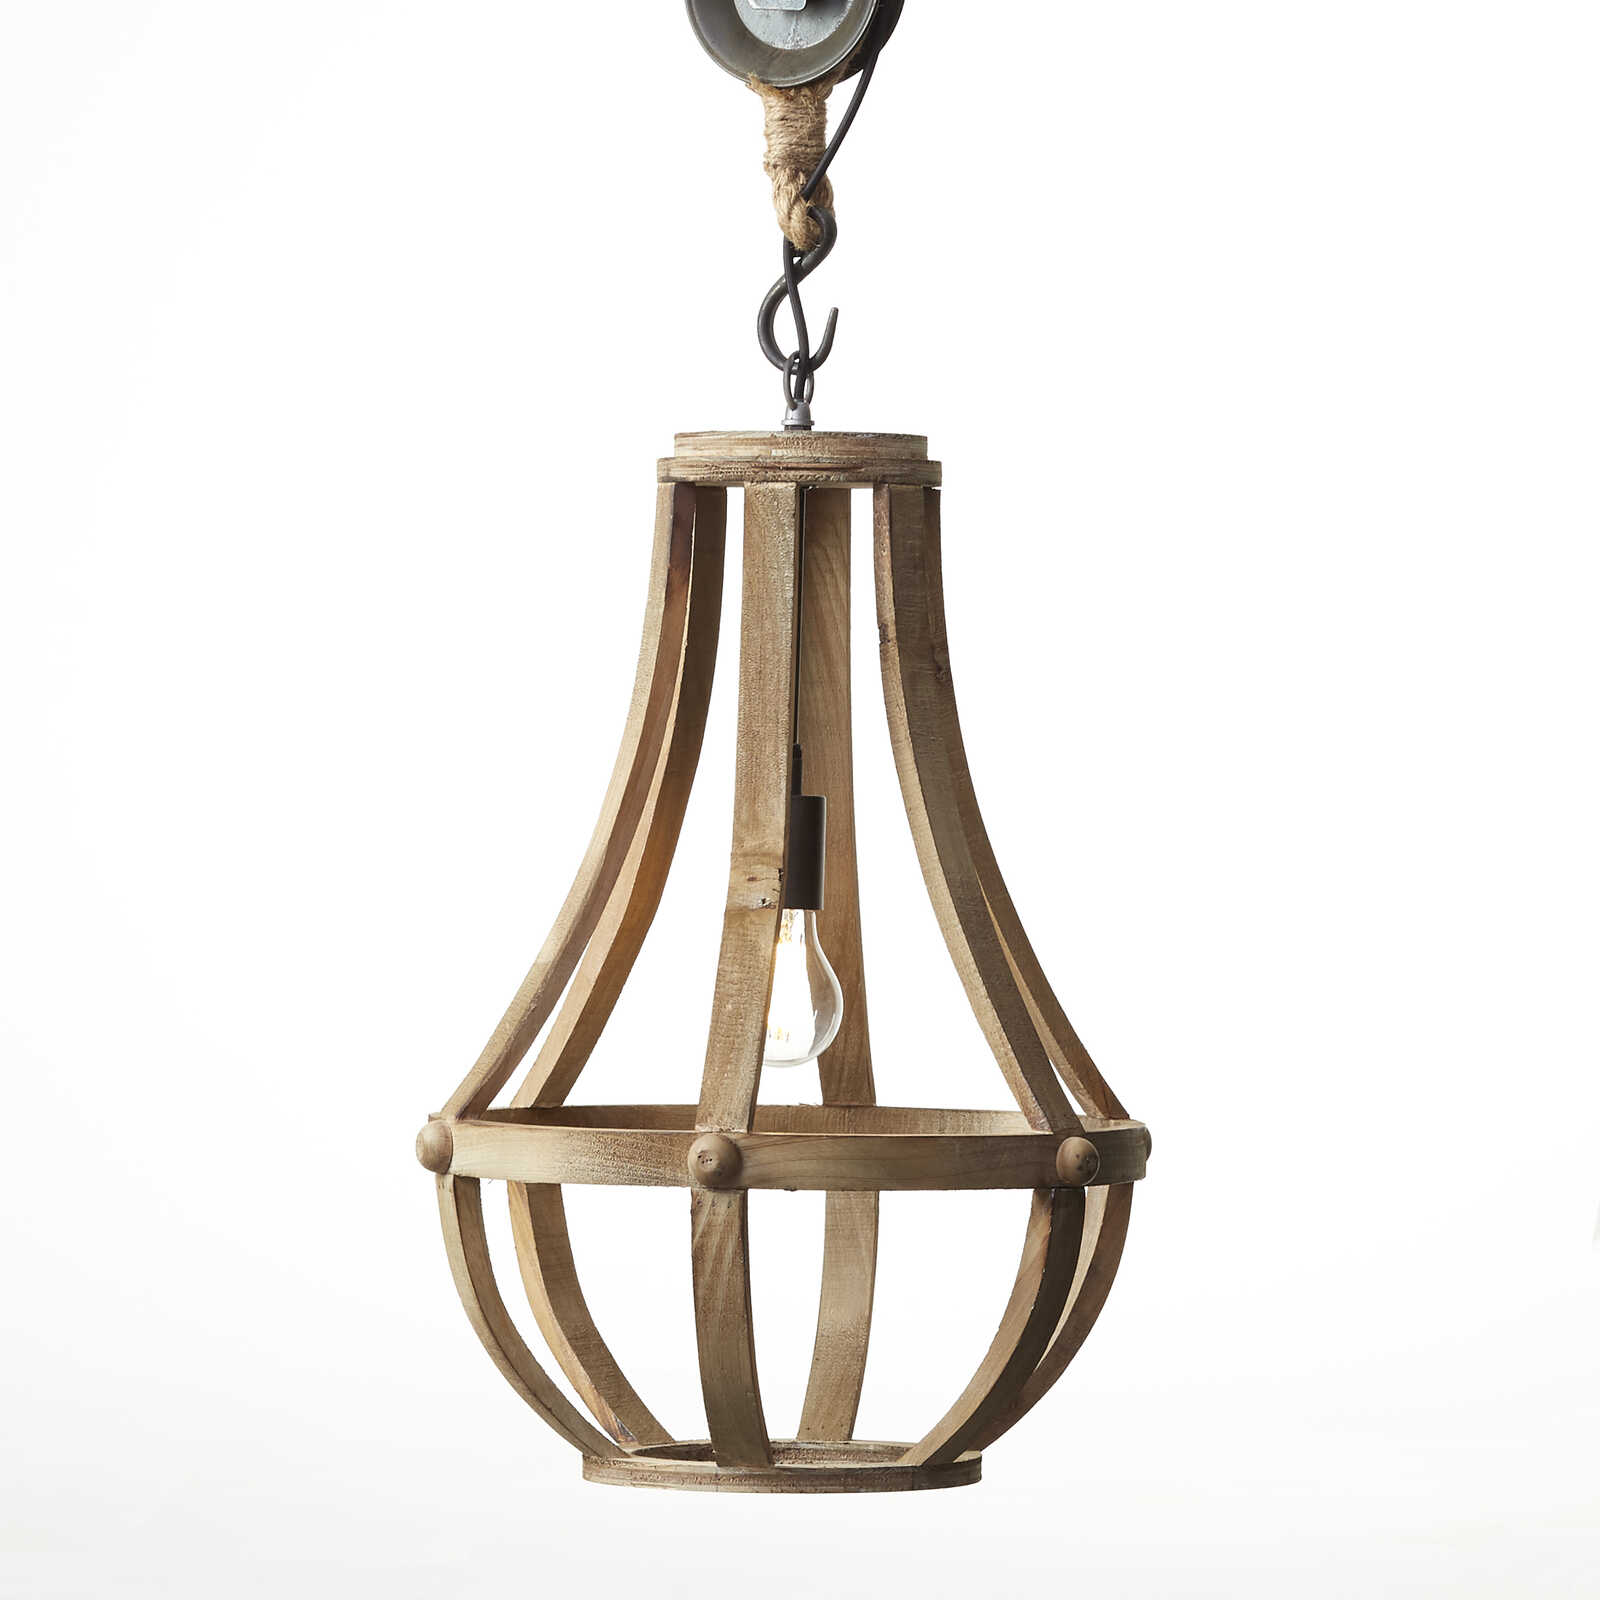             Houten hanglamp - Elif - Bruin
        